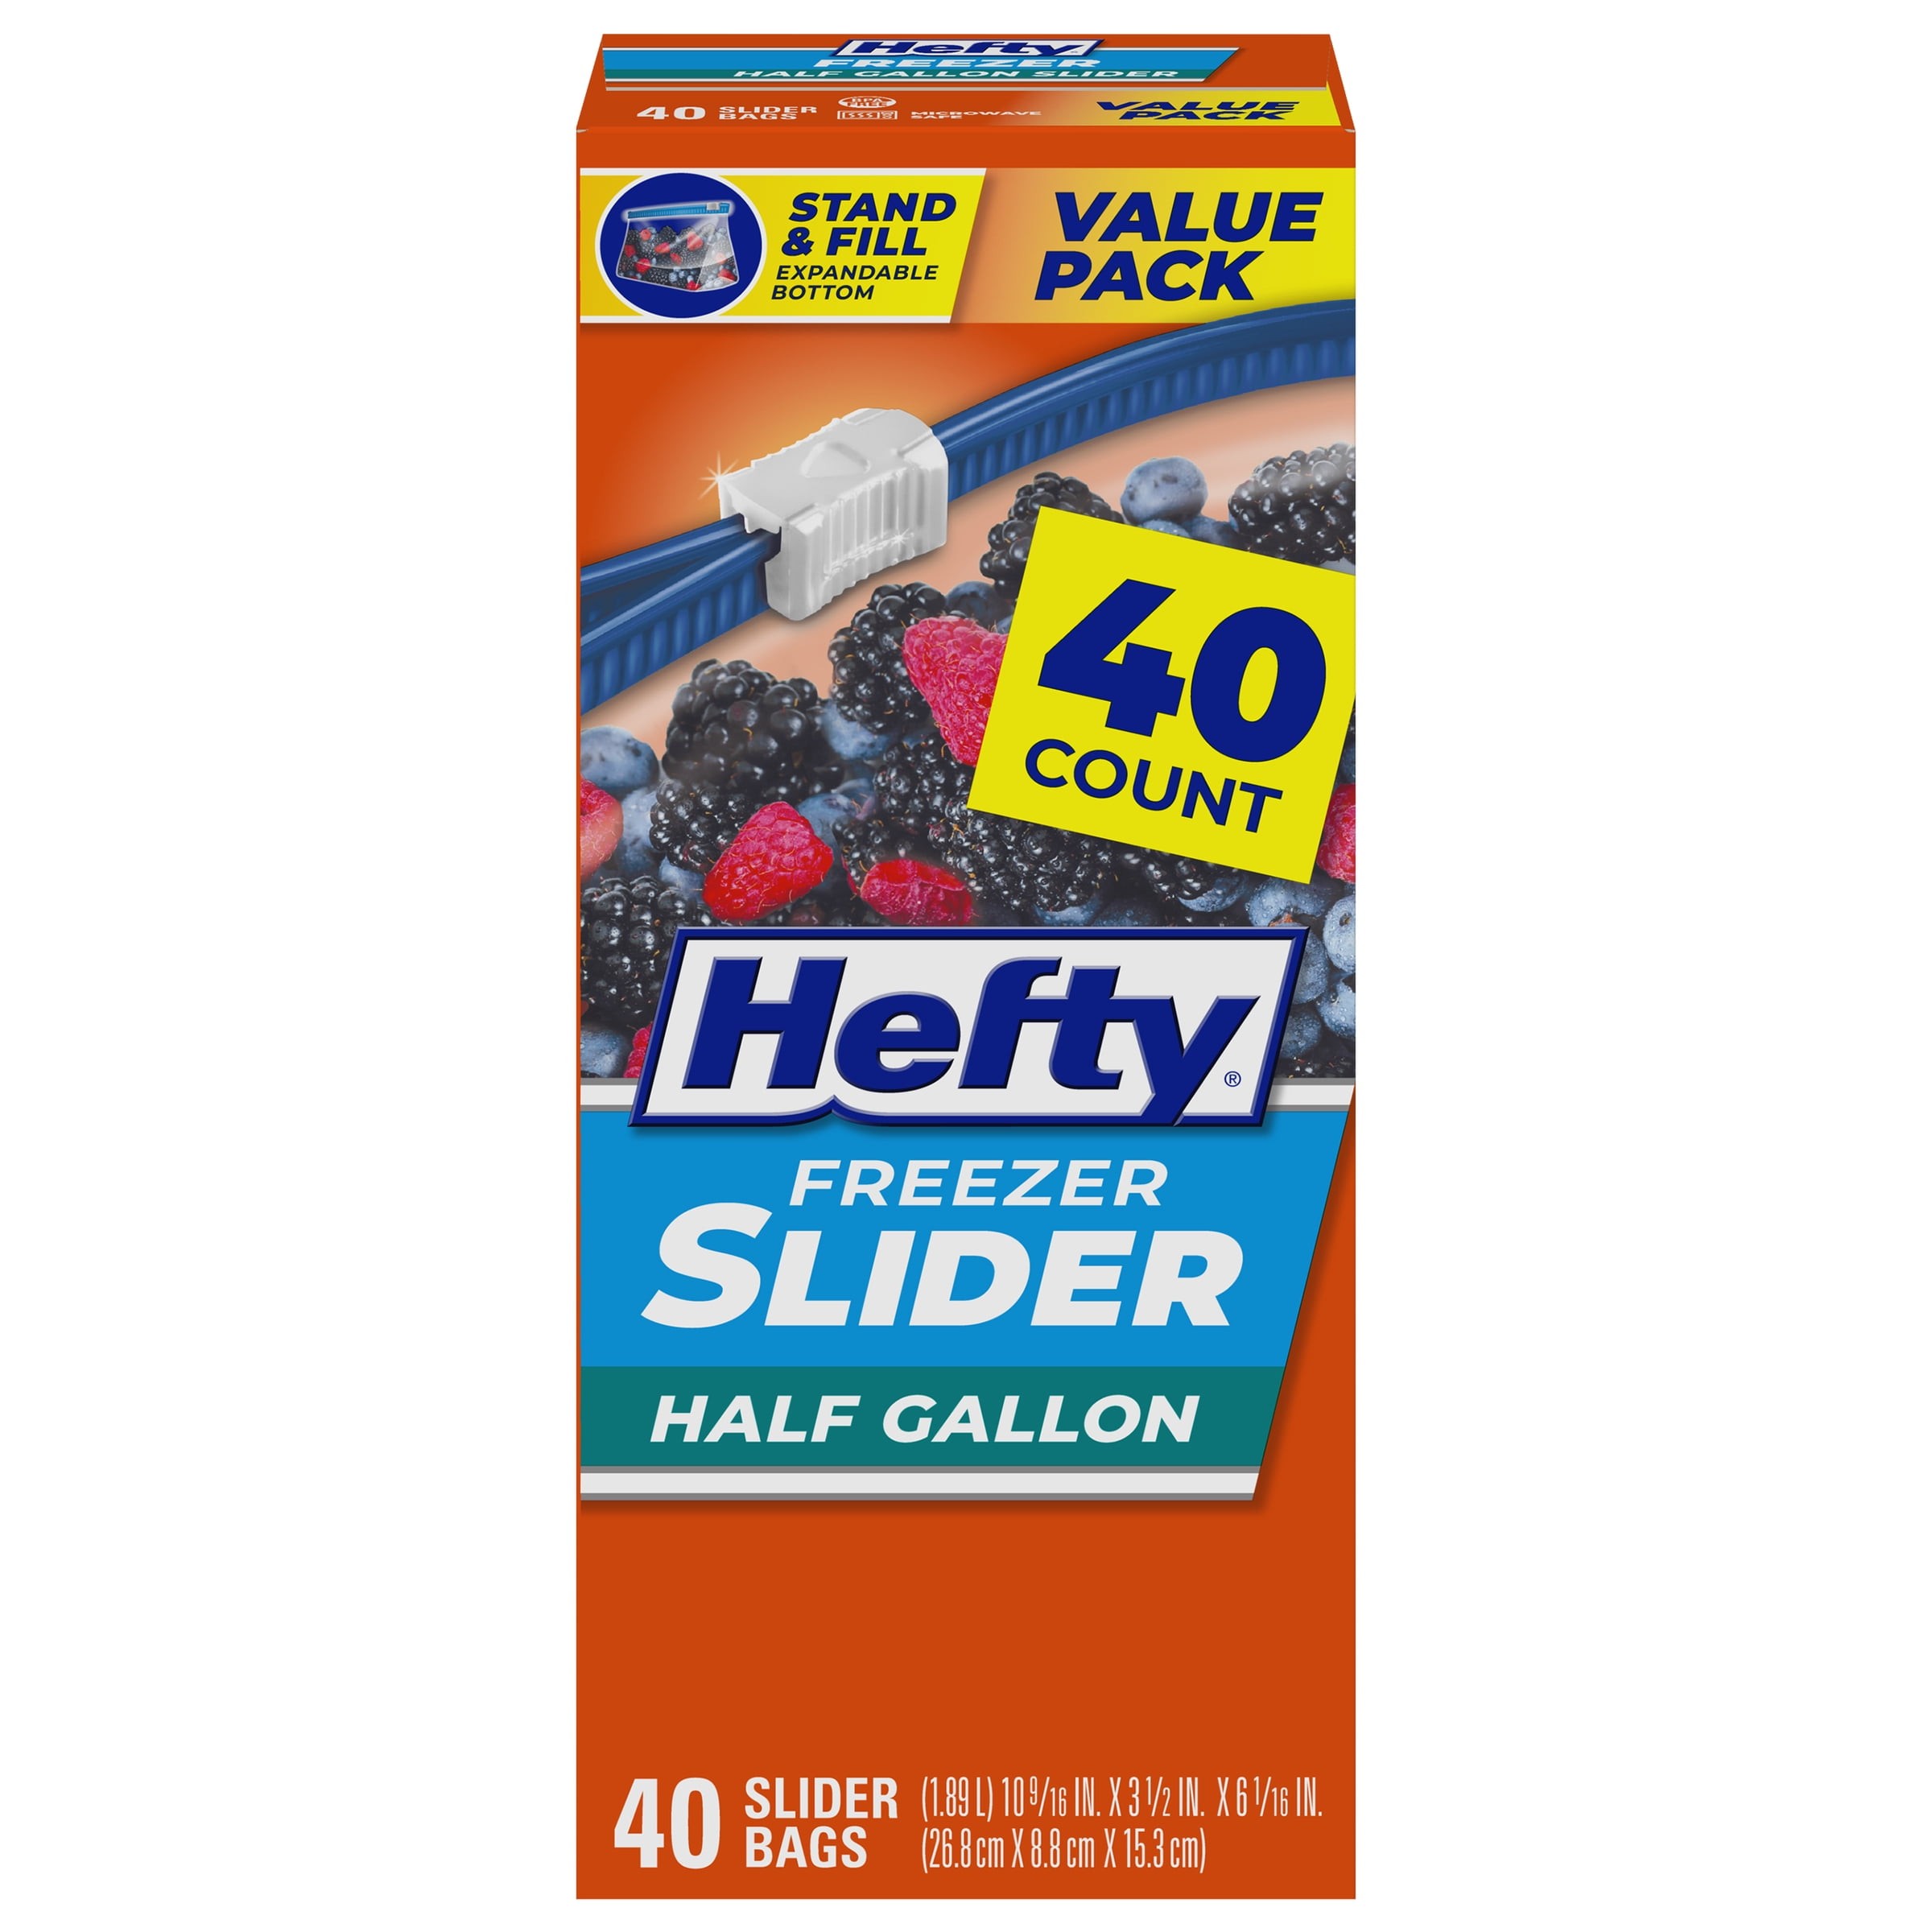 Mejores ofertas e historial de precios de Hefty Slider Freezer